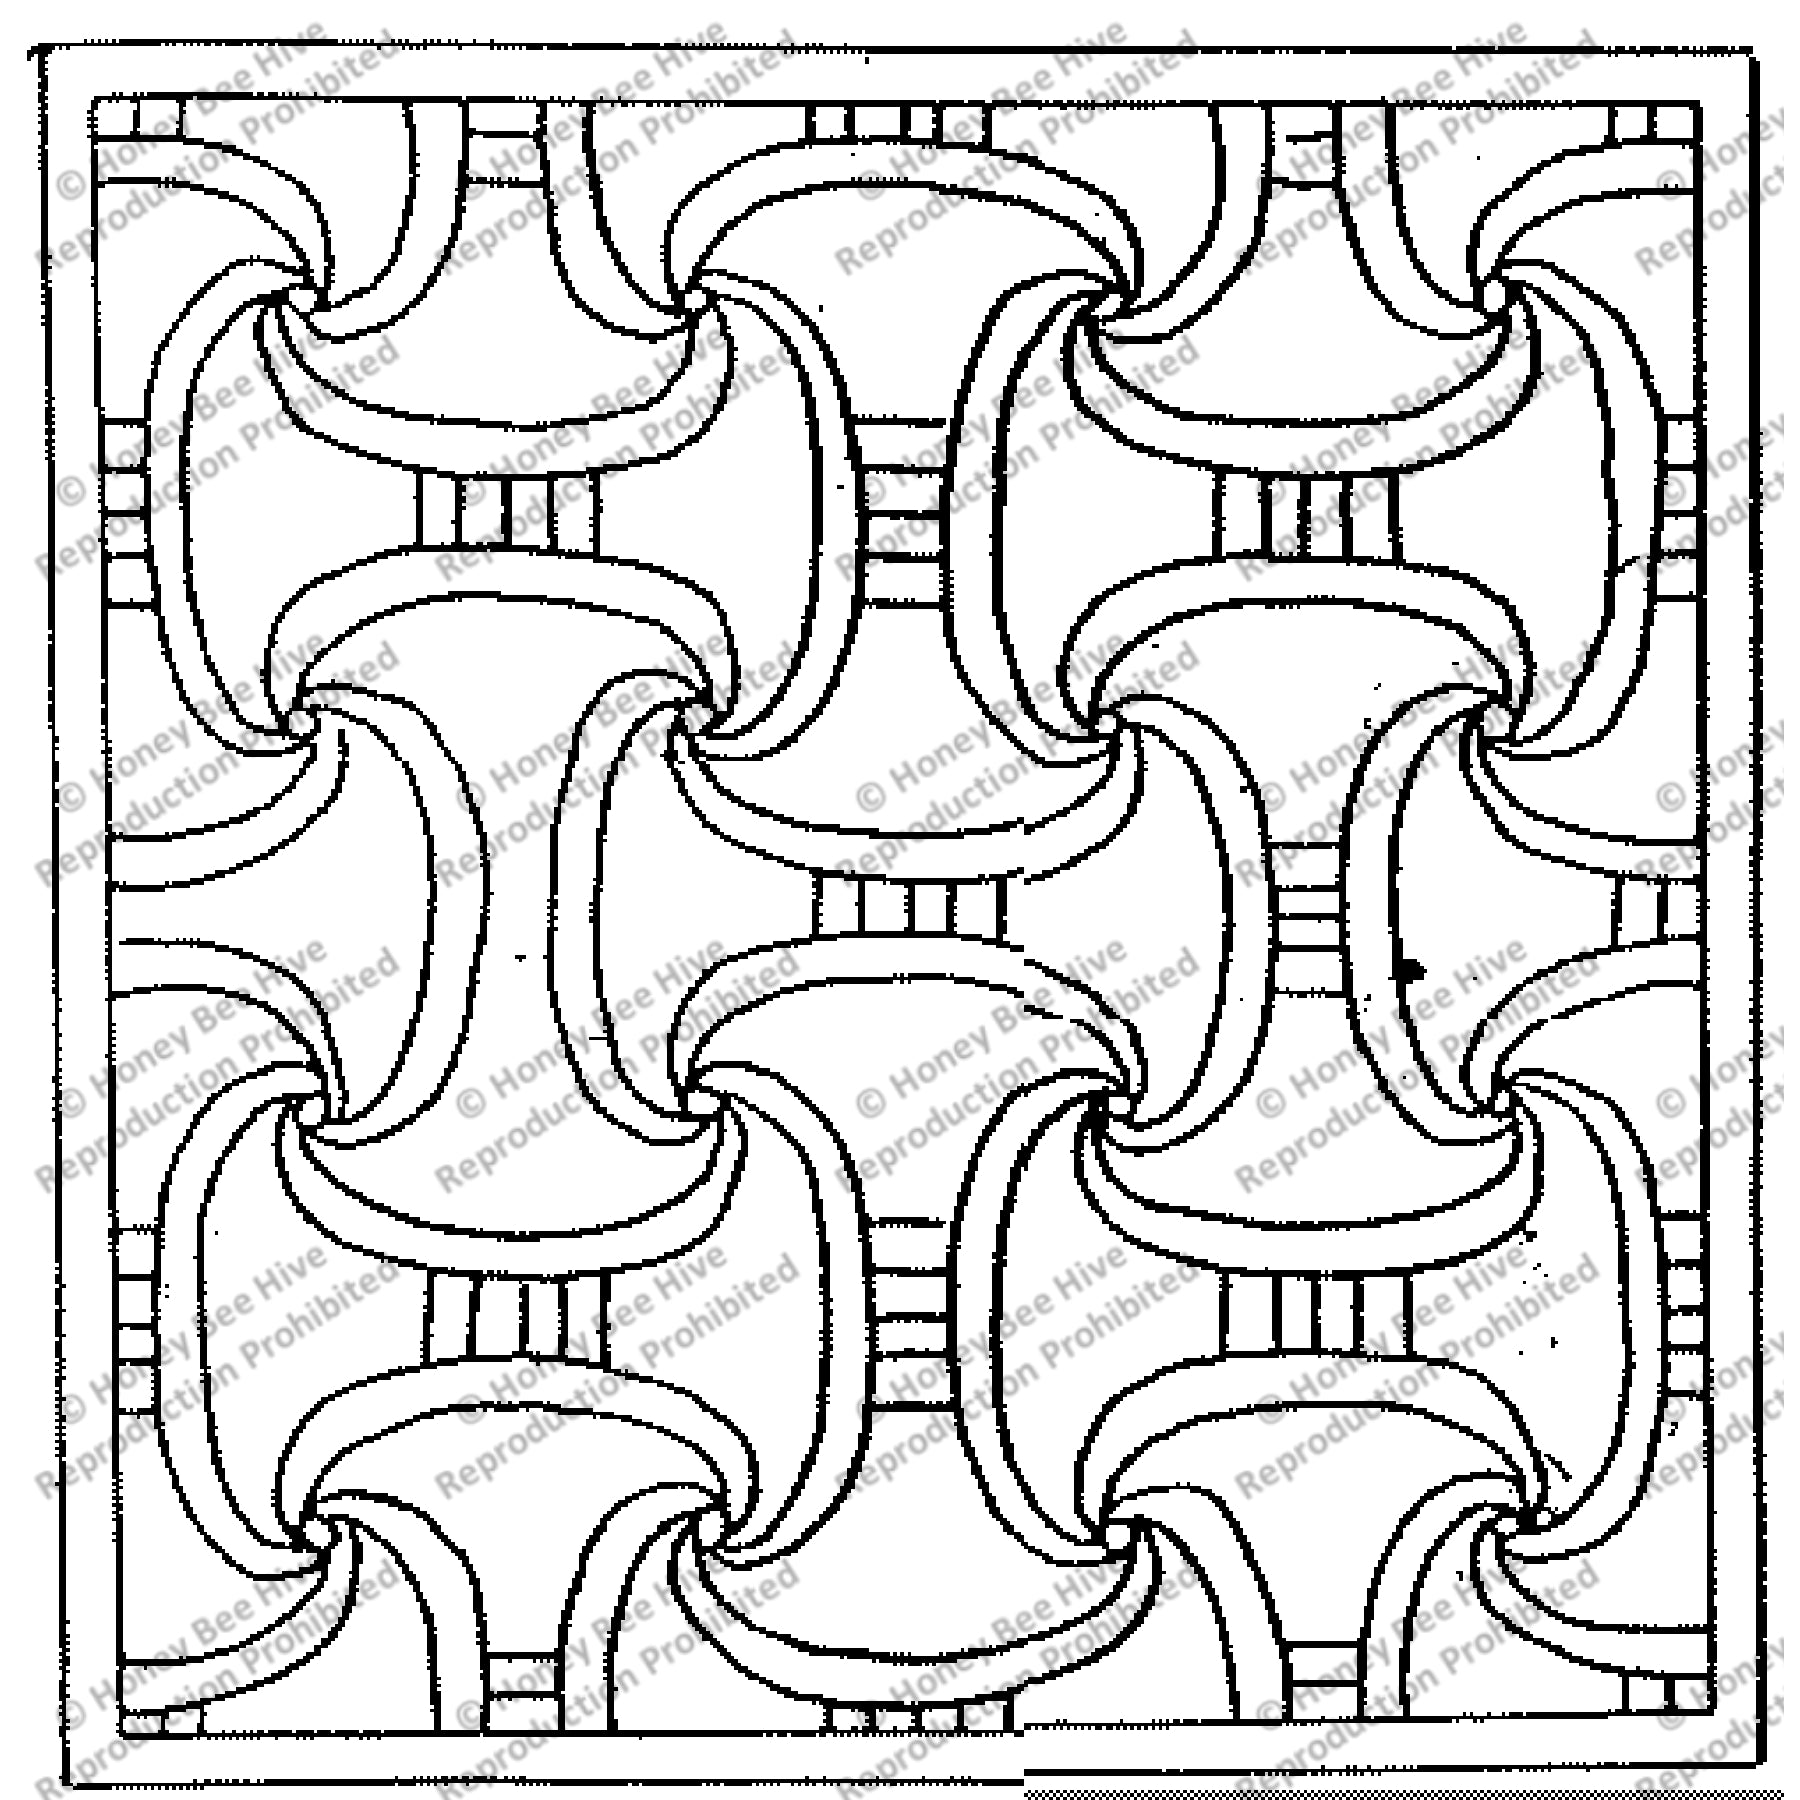 Symmetry, rug hooking pattern